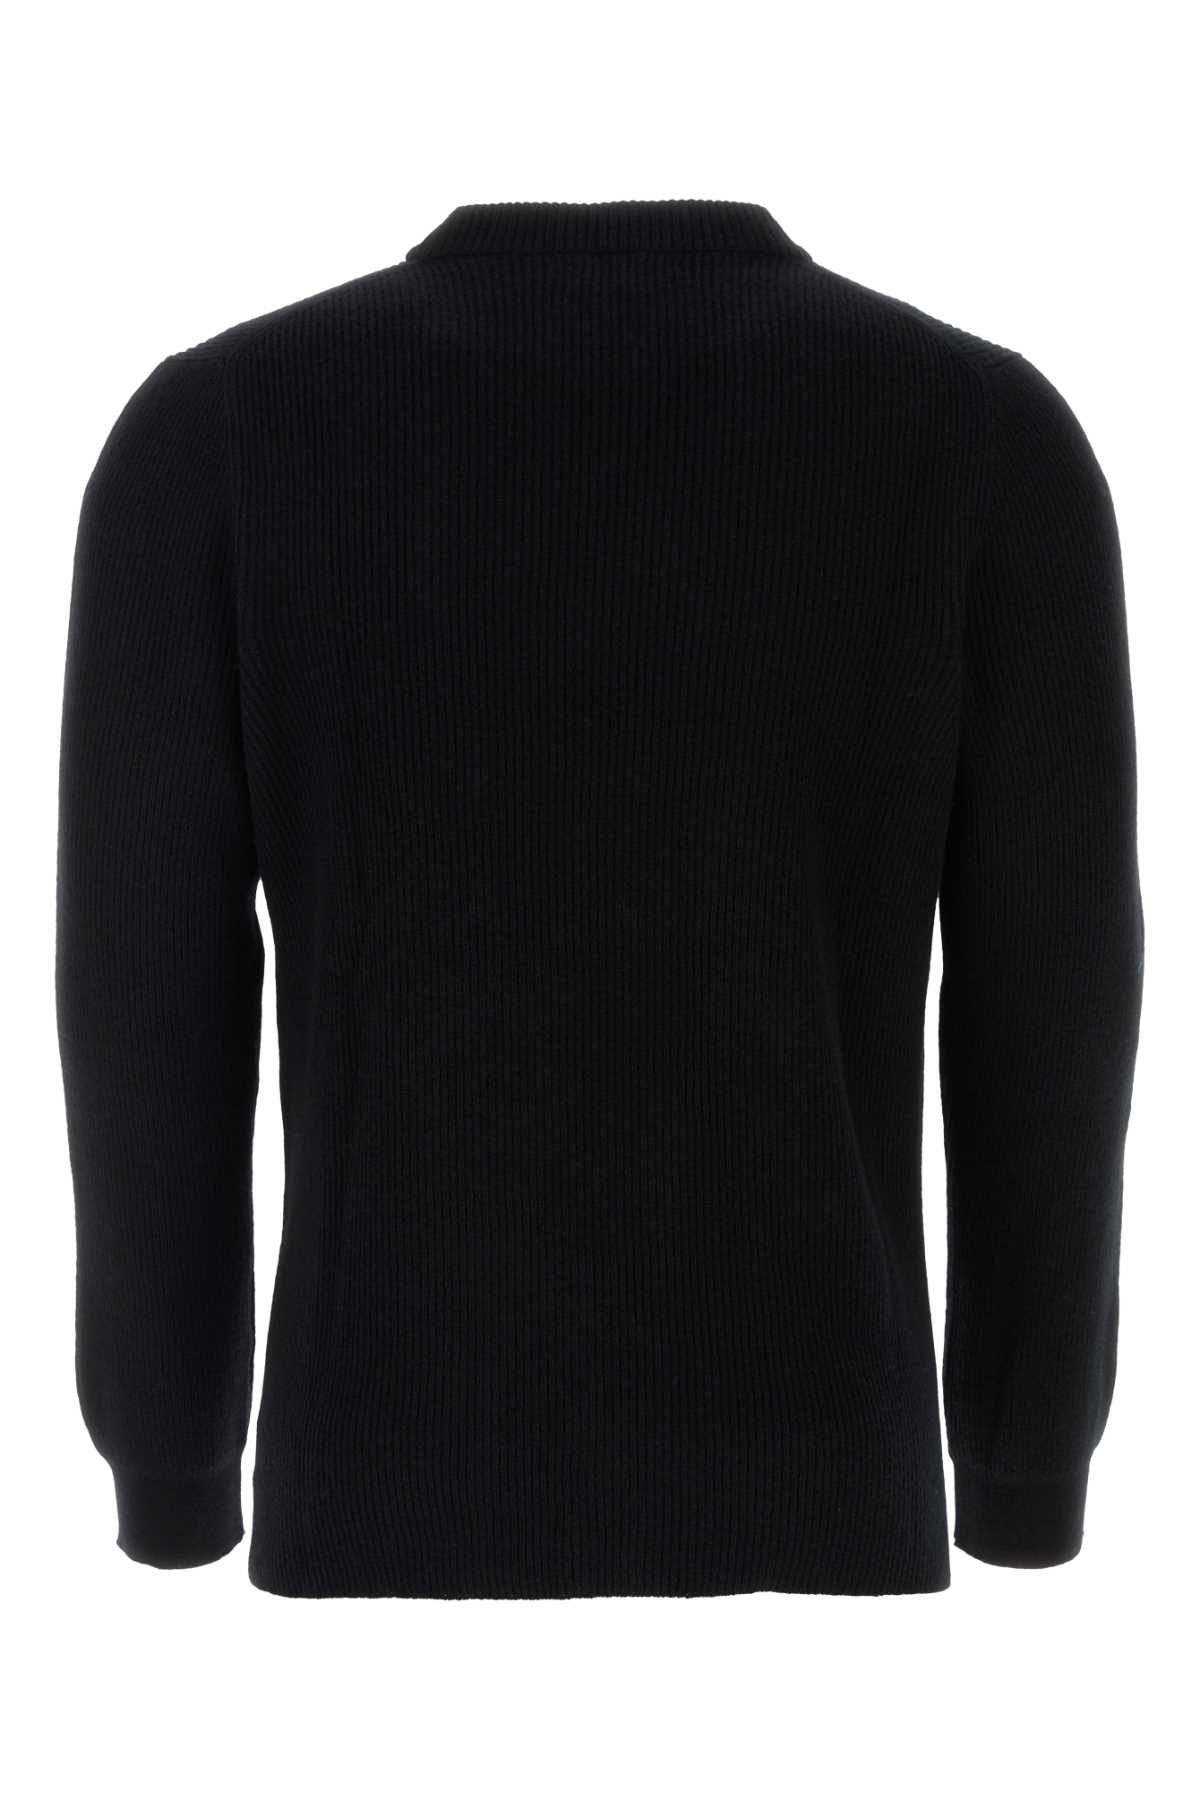 Shop Johnstons Of Elgin Black Cashmere Sweater